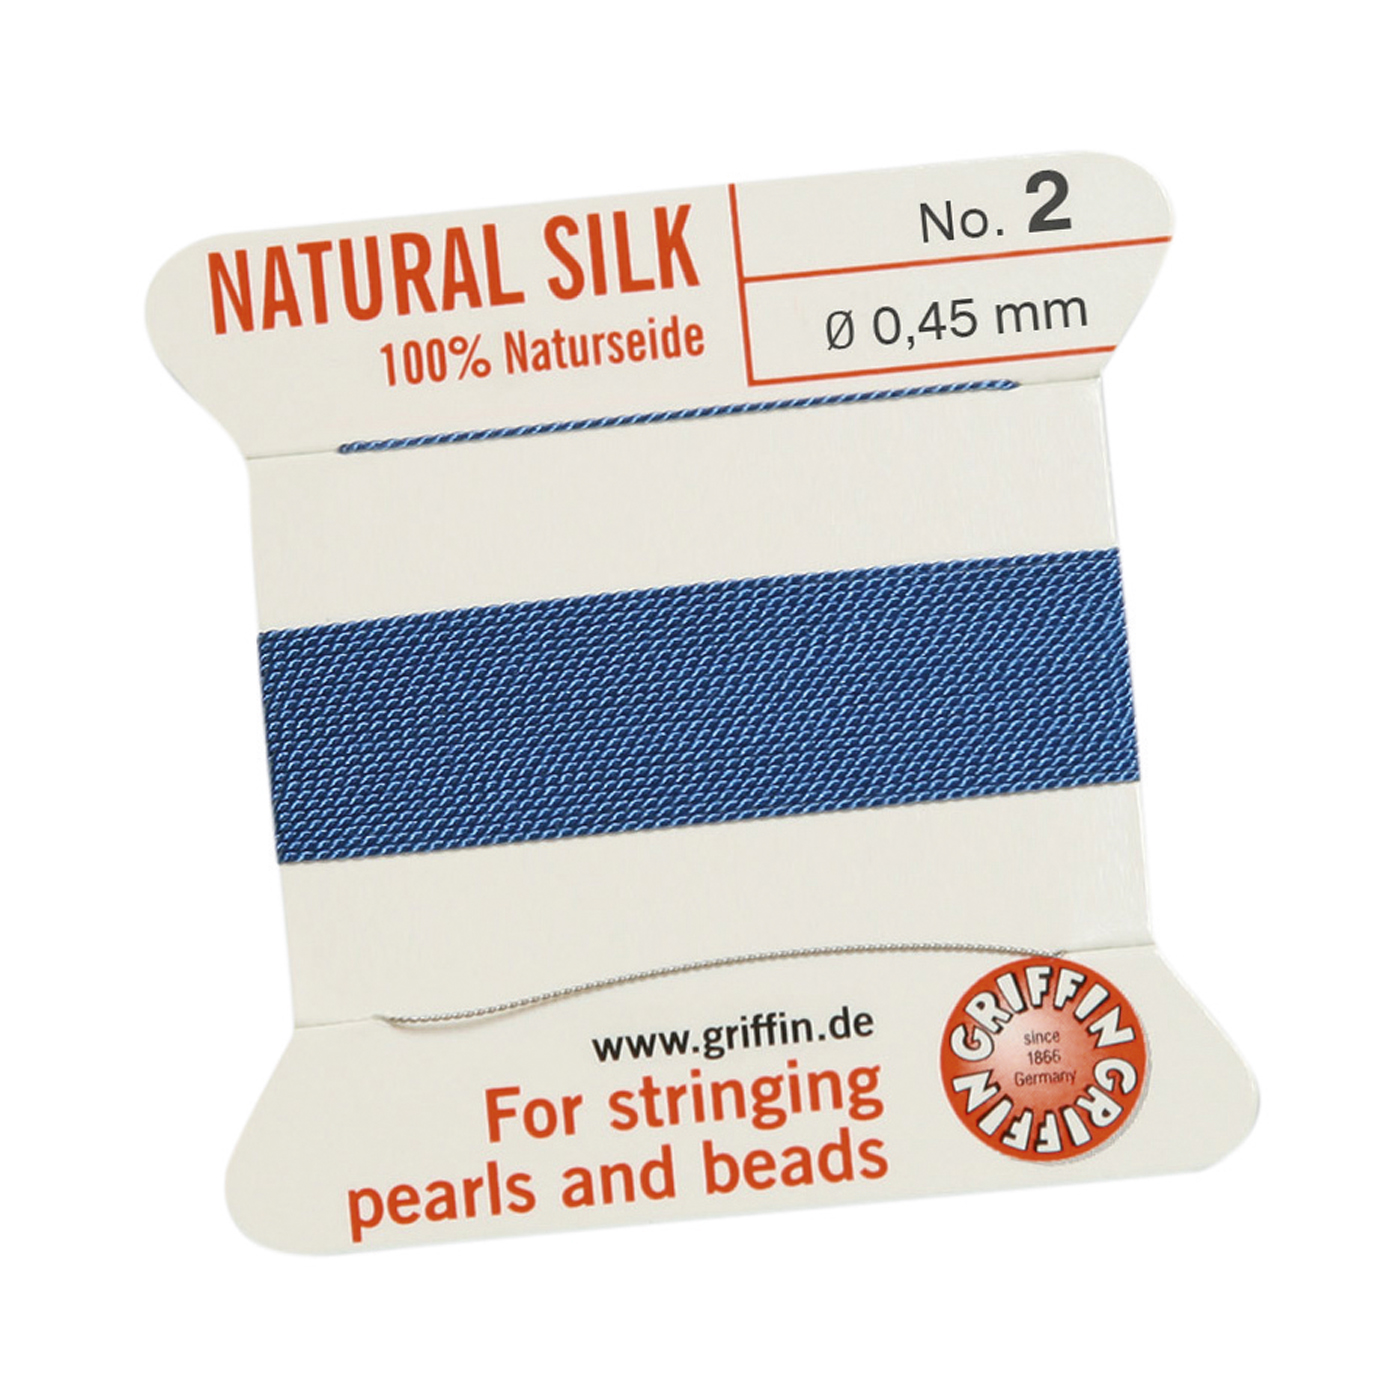 Bead Cord 100% Natural Silk, Blue, No. 2 - 2 m